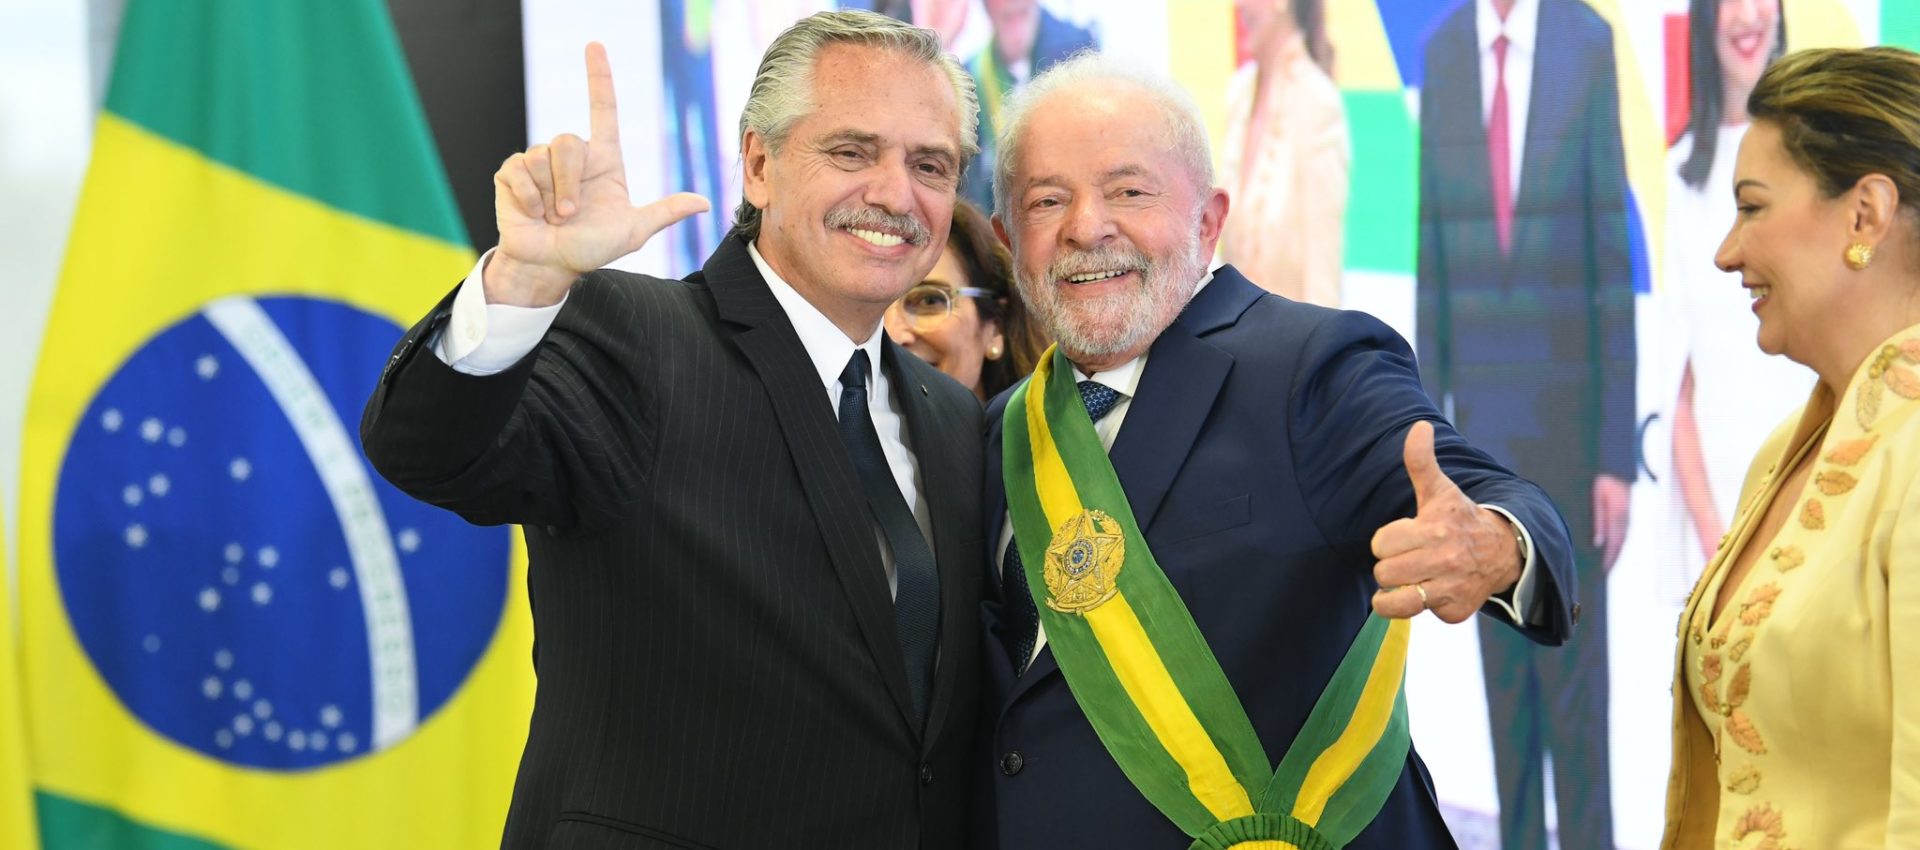 Alberto Fernádez Lula